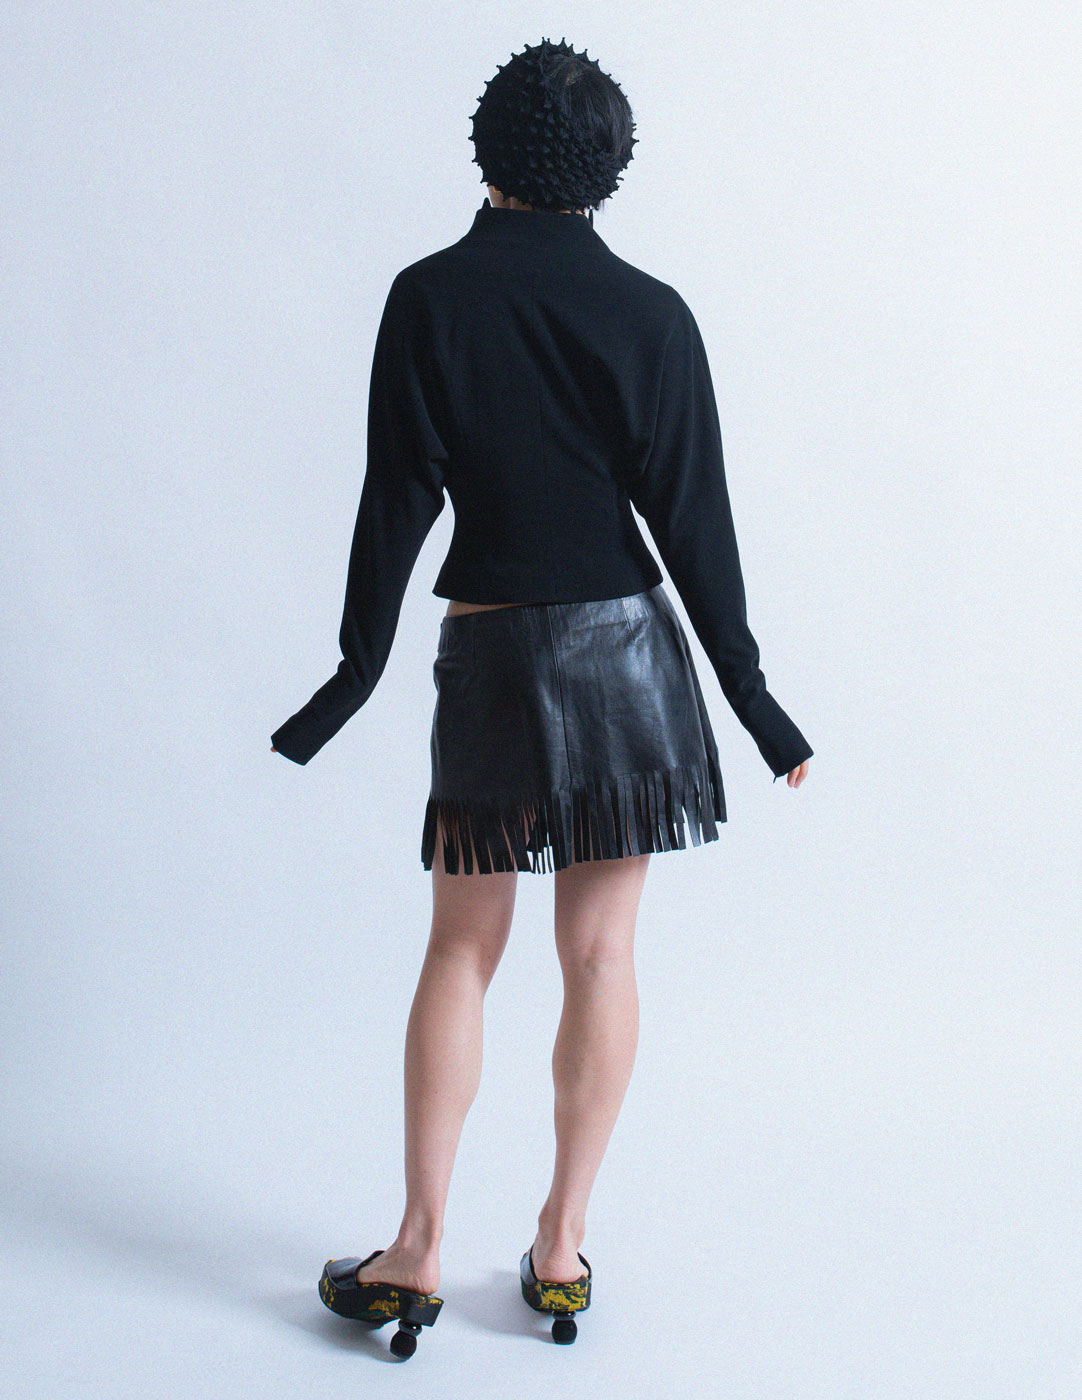 D&G fringe leather skirt back view